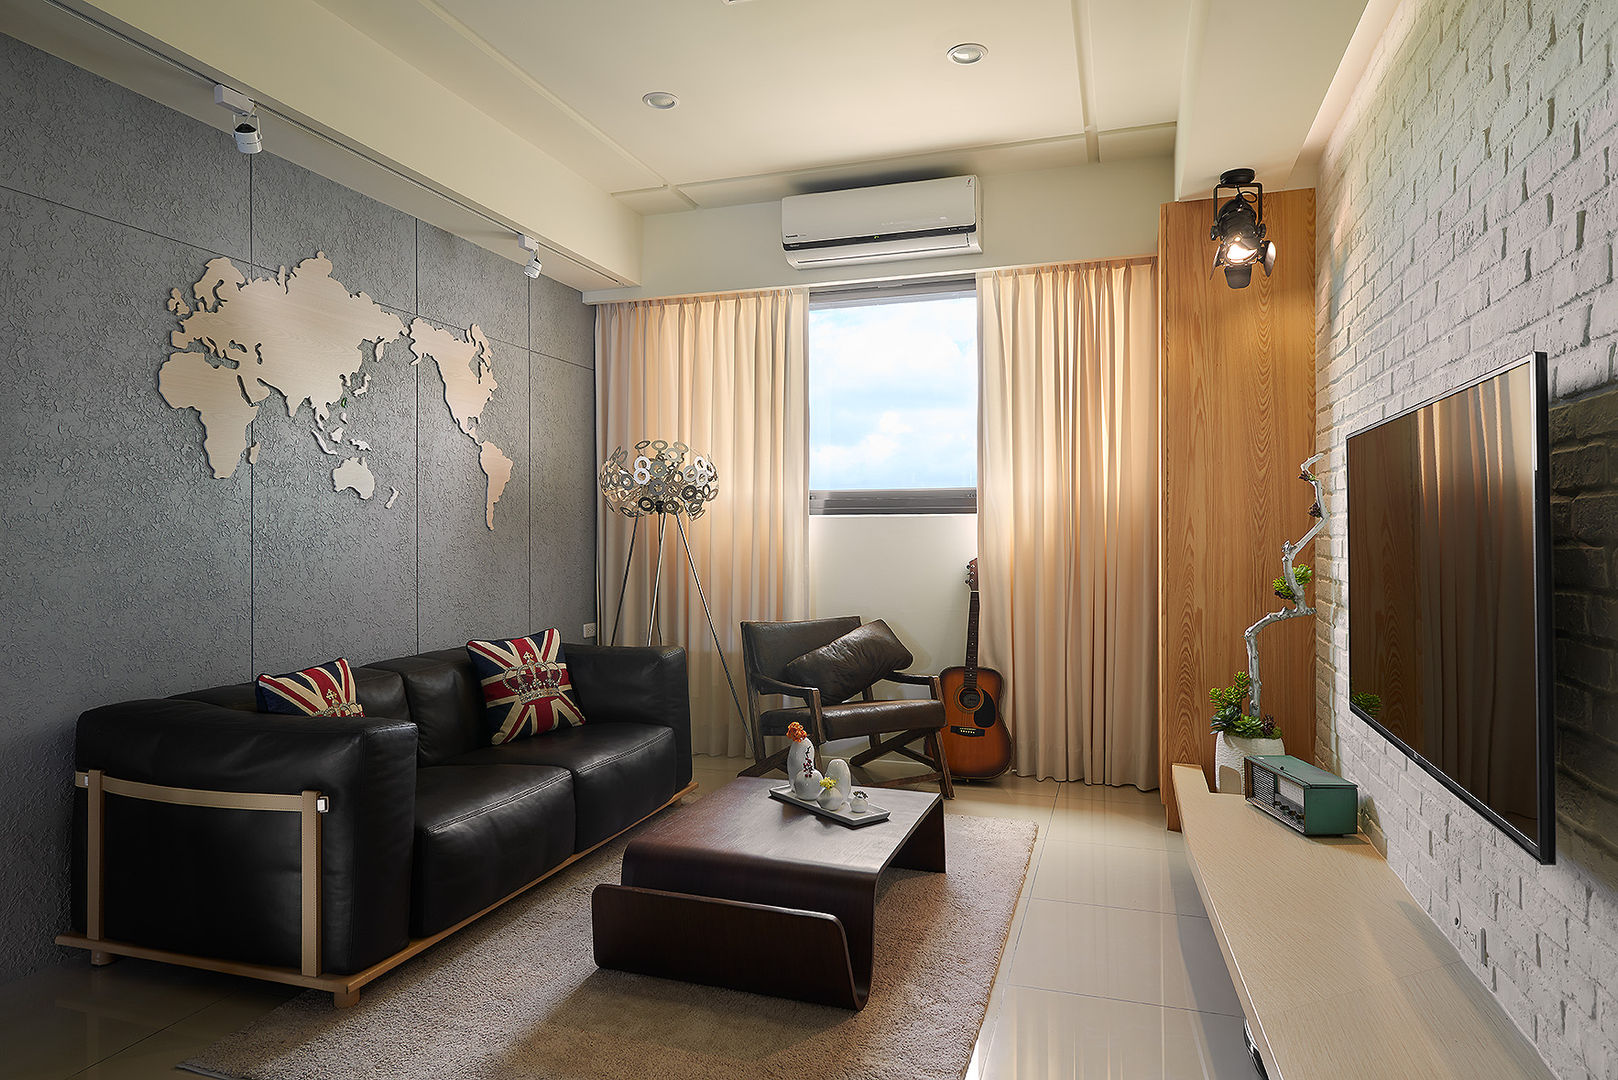 悠遊世界的旅行 趙玲室內設計 Living room